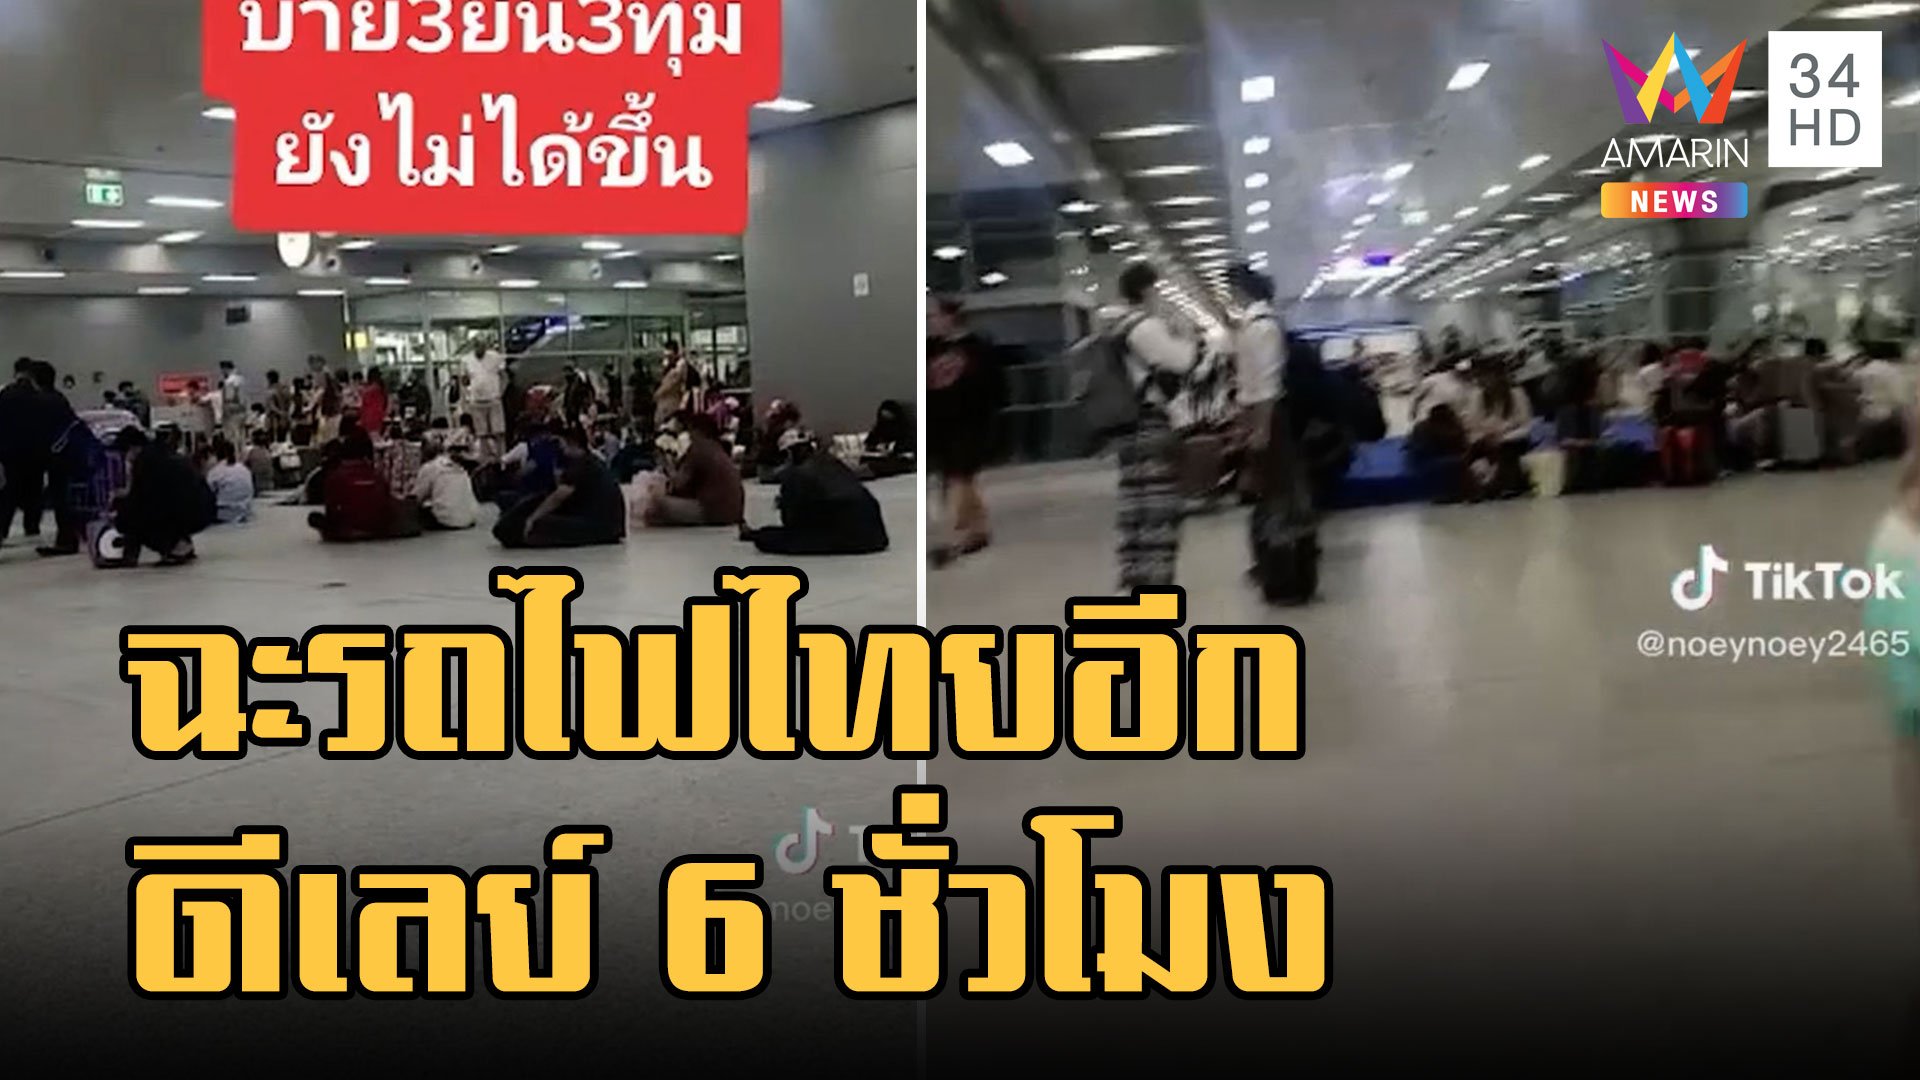 ชาวบ้านฉะ "รถไฟไทย" สถานีใหม่แต่ช้าเหมือนเดิม รอกัน 6 ชั่วโมง | ข่าวอรุณอมรินทร์ | 22 ม.ค. 66 | AMARIN TVHD34